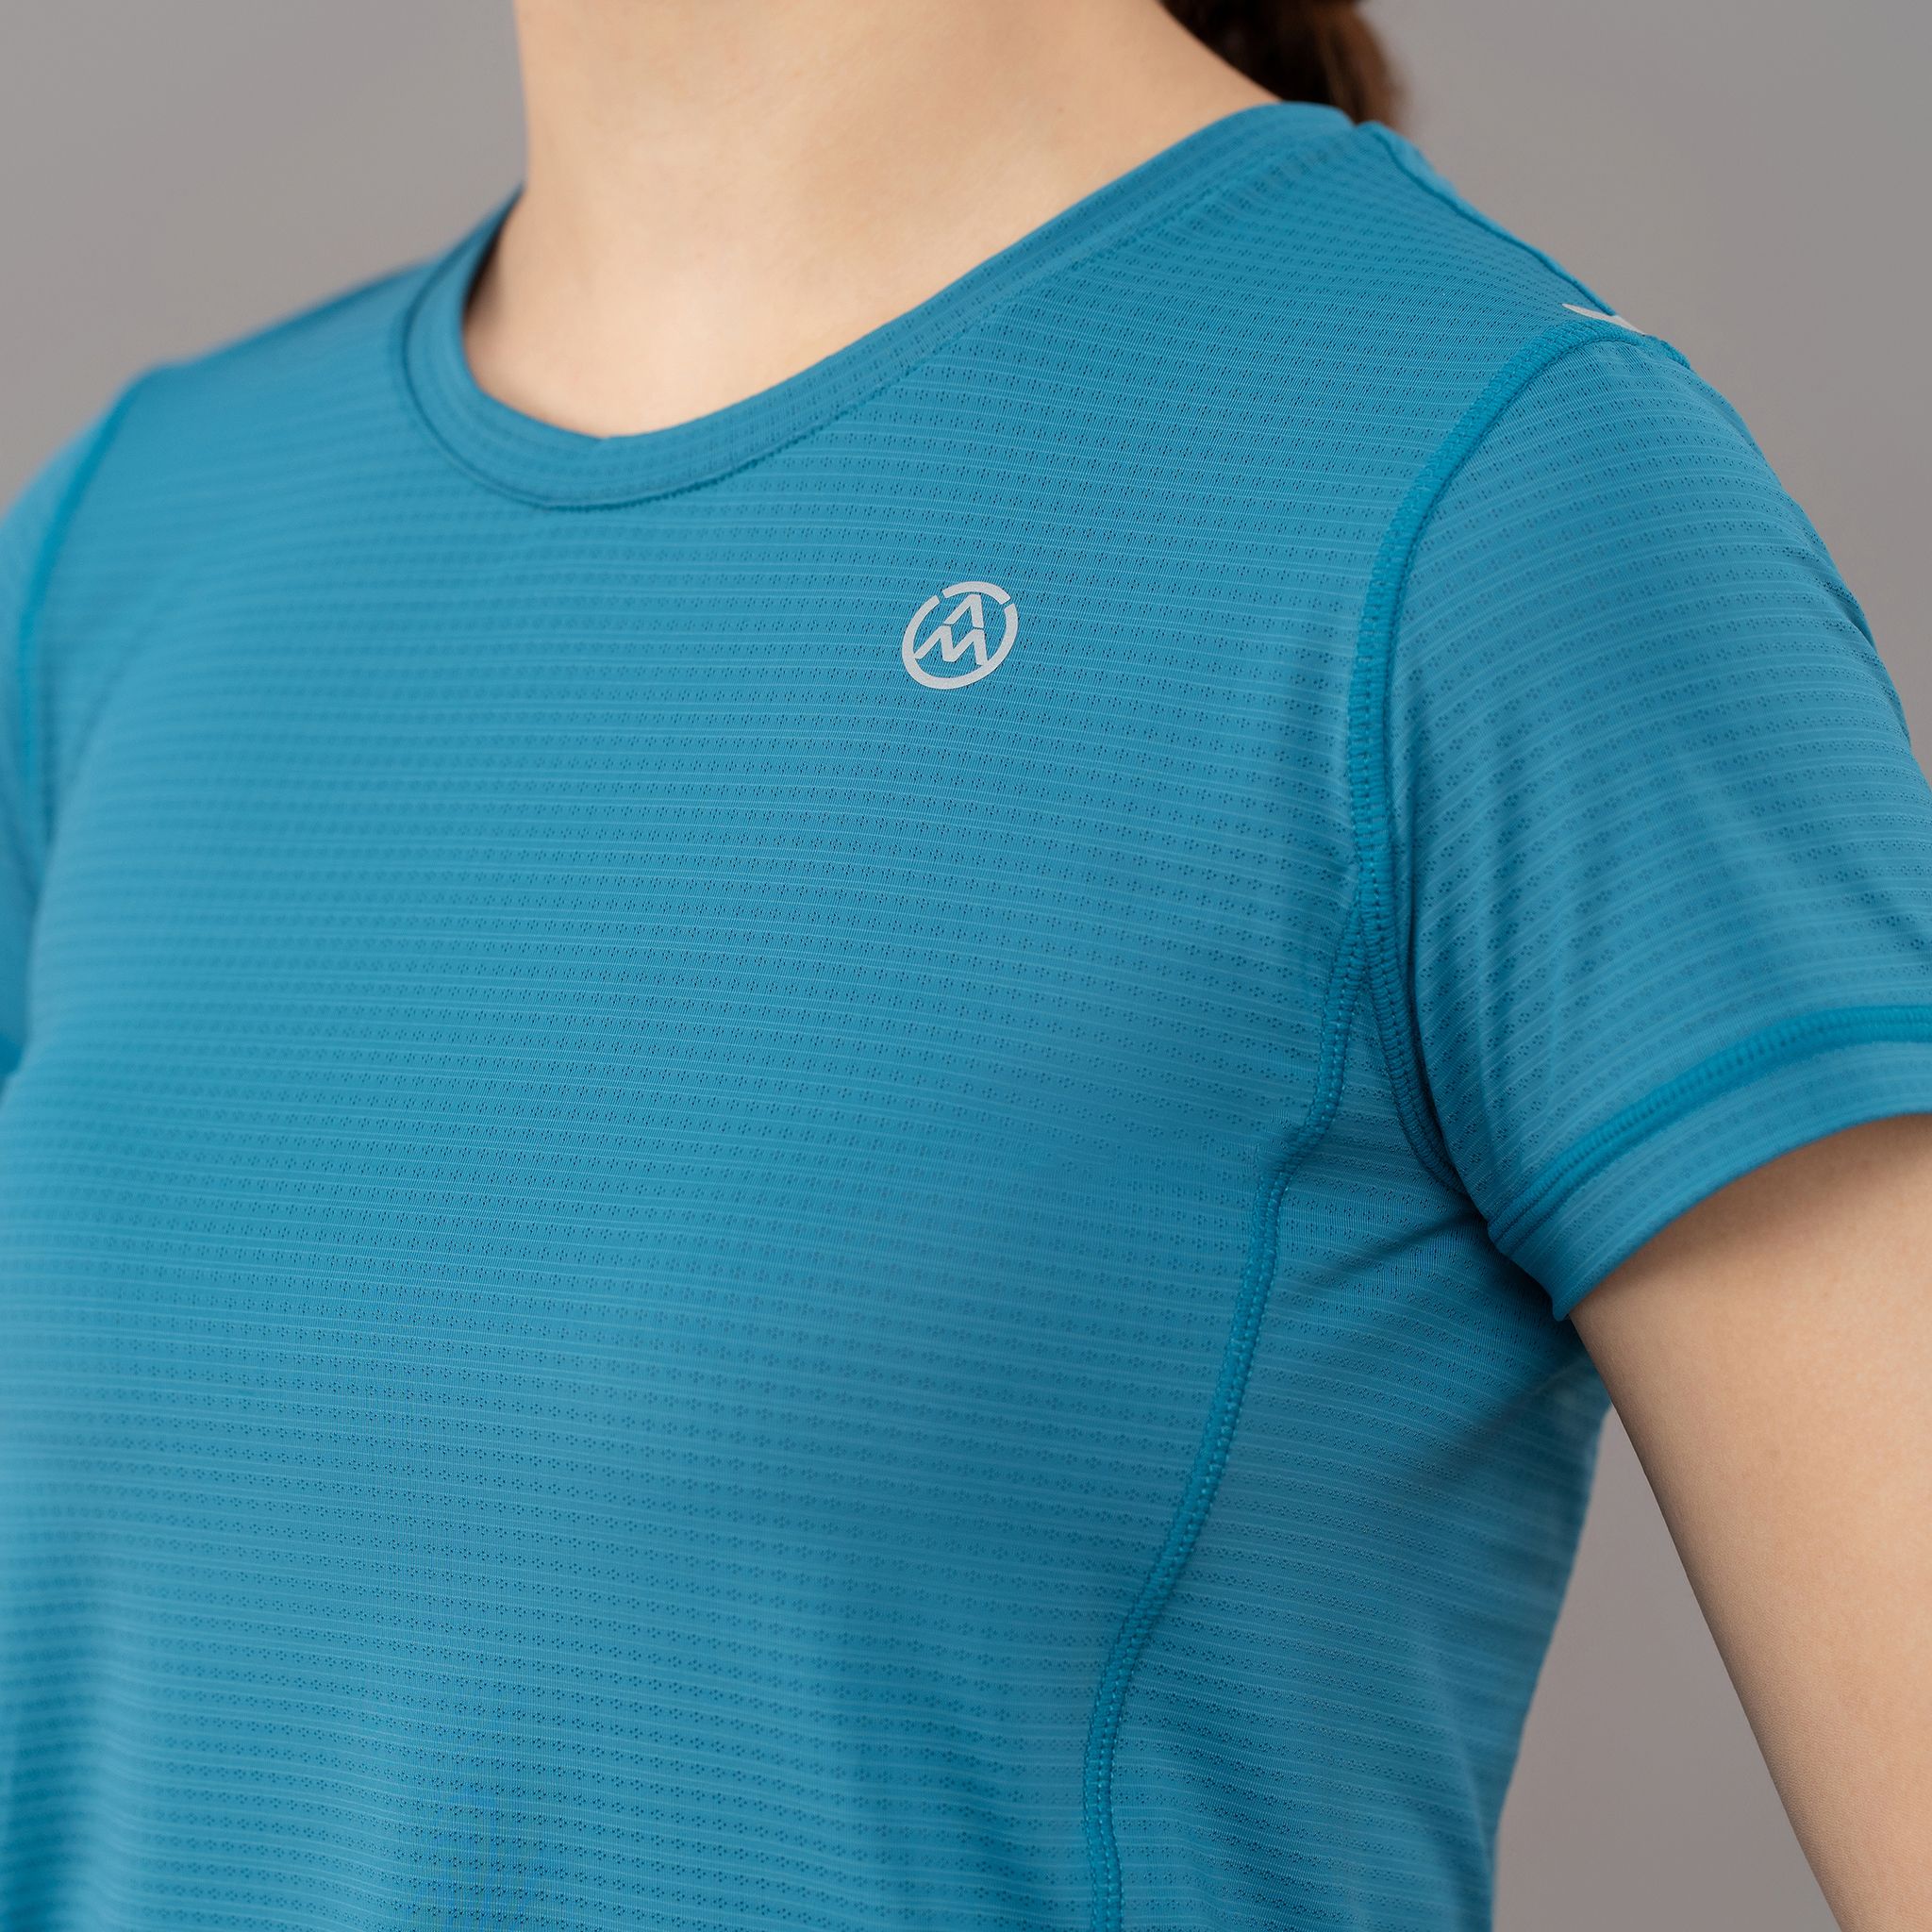  Áo Tshirt nữ AM xanh cổ vịt TSW2302-32 